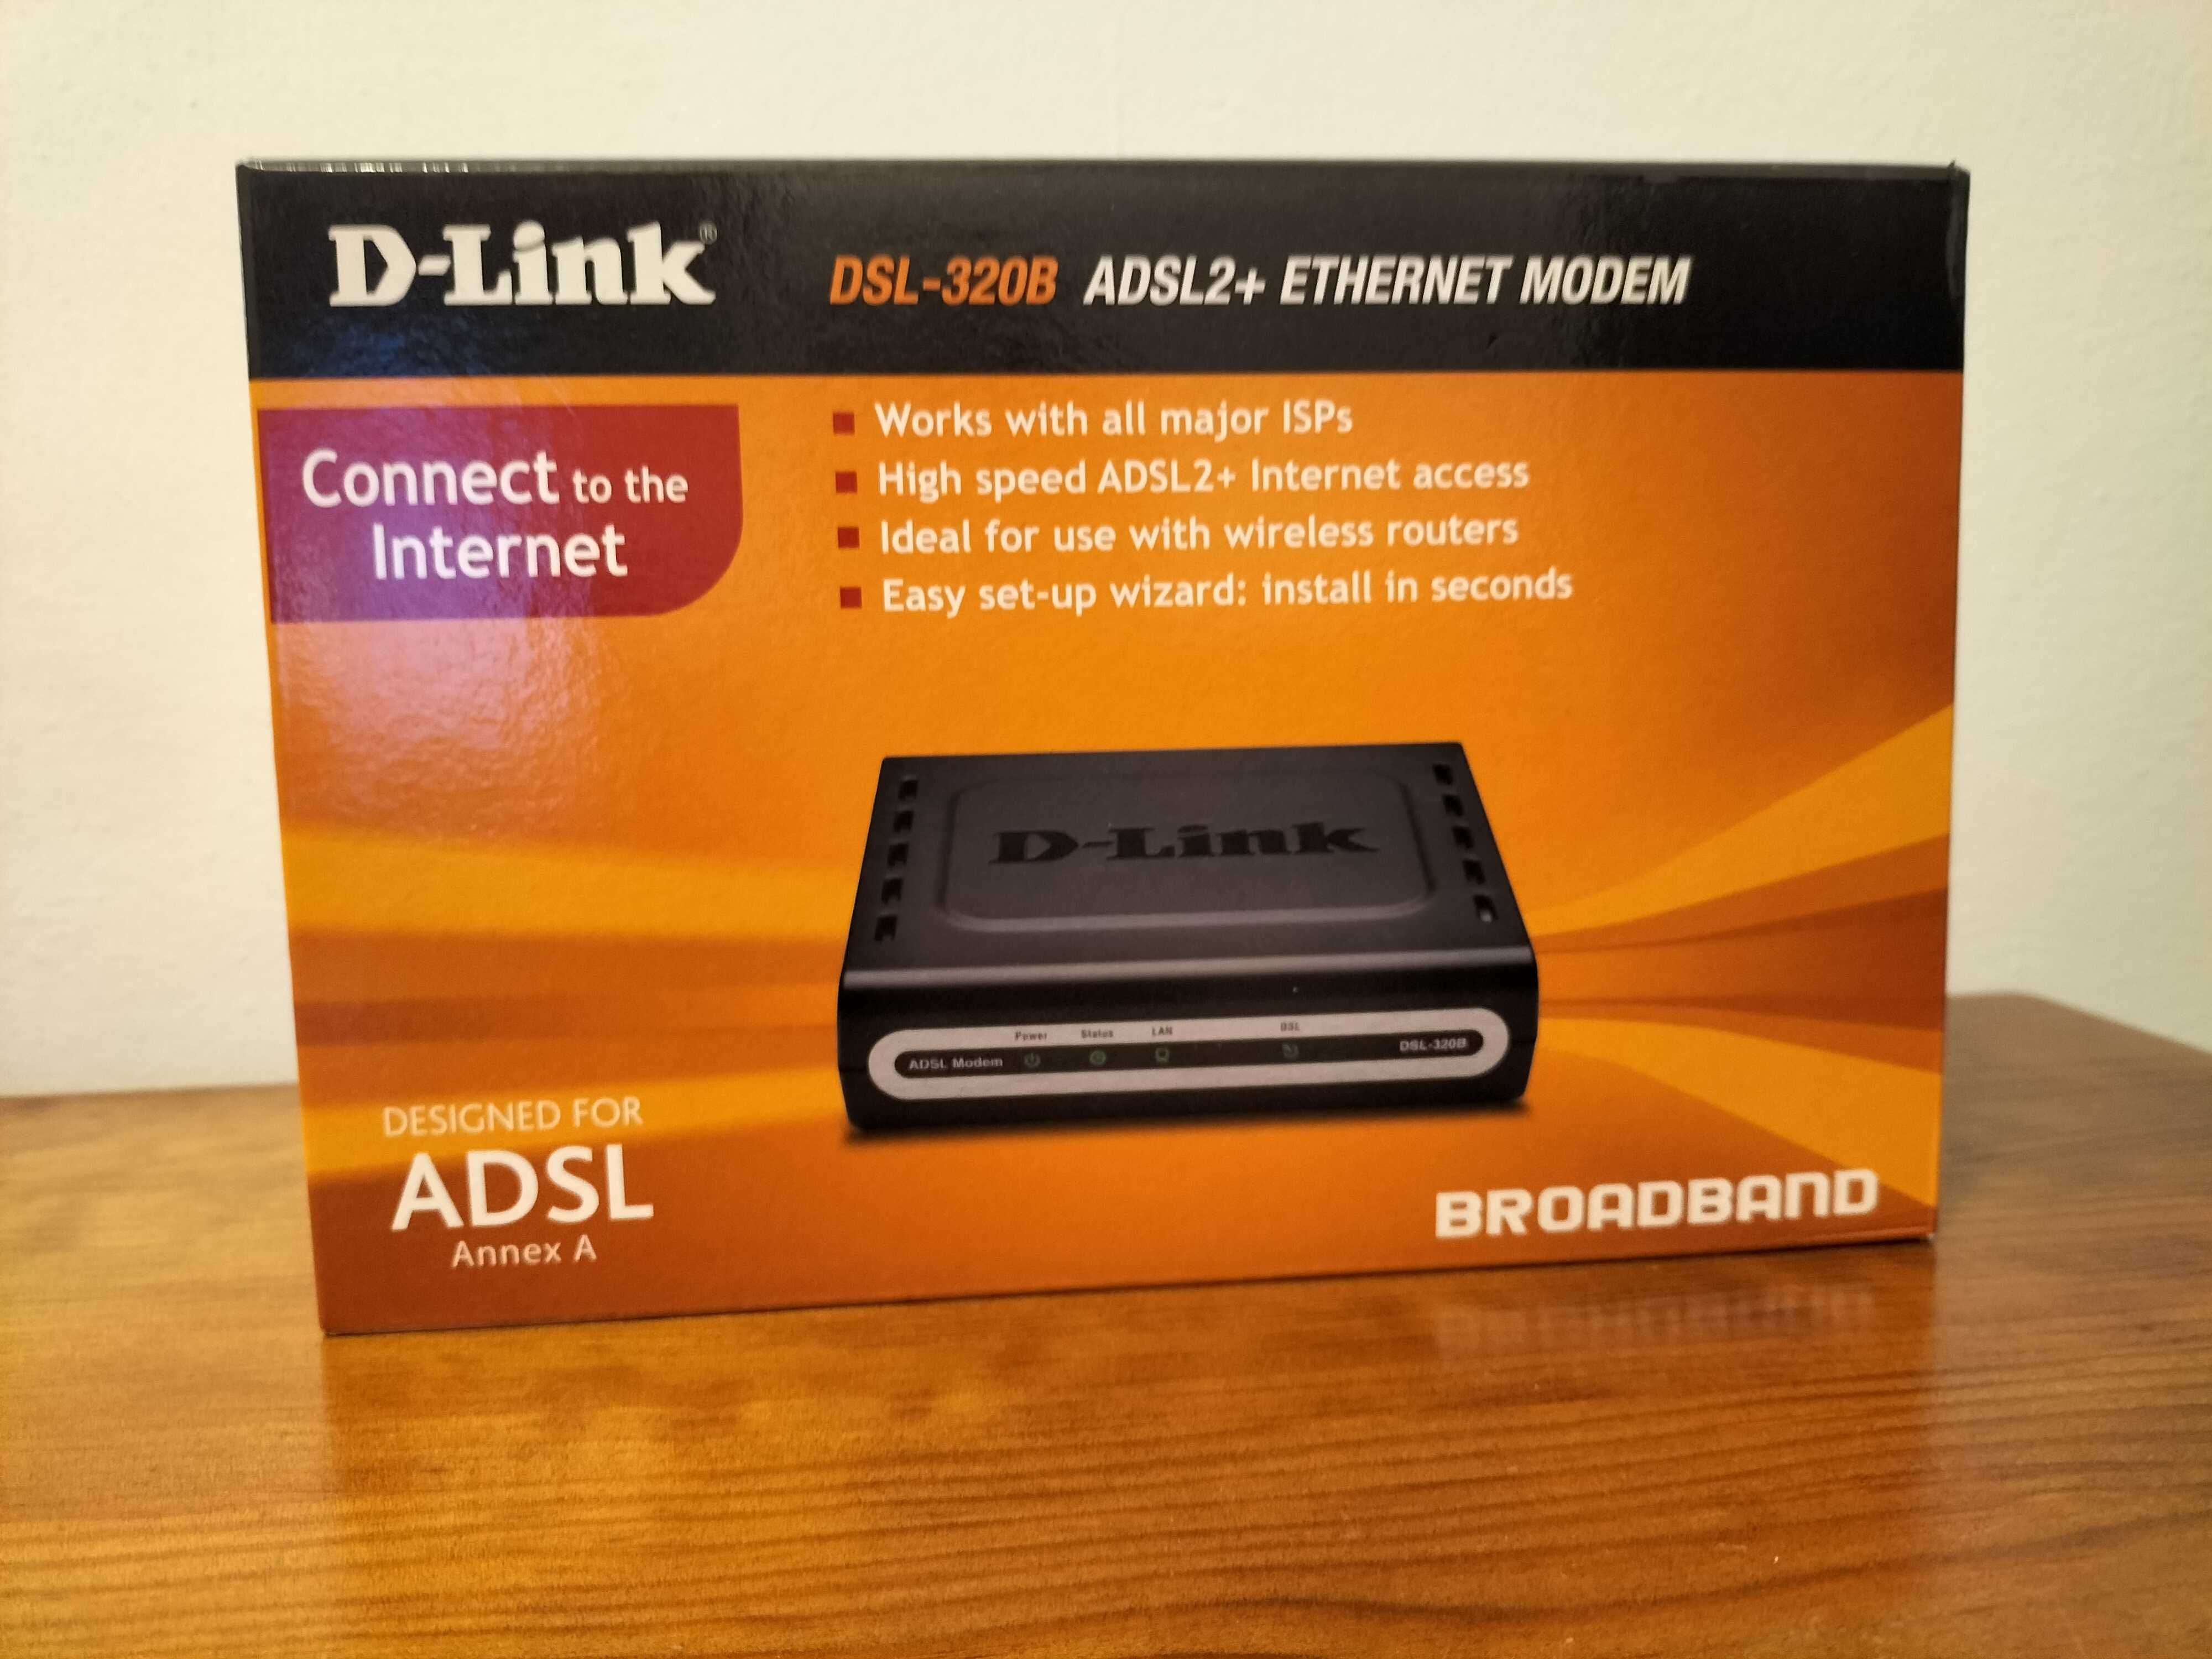 D-Link DSL-320B ADSL2+ ETHERNET MODEM